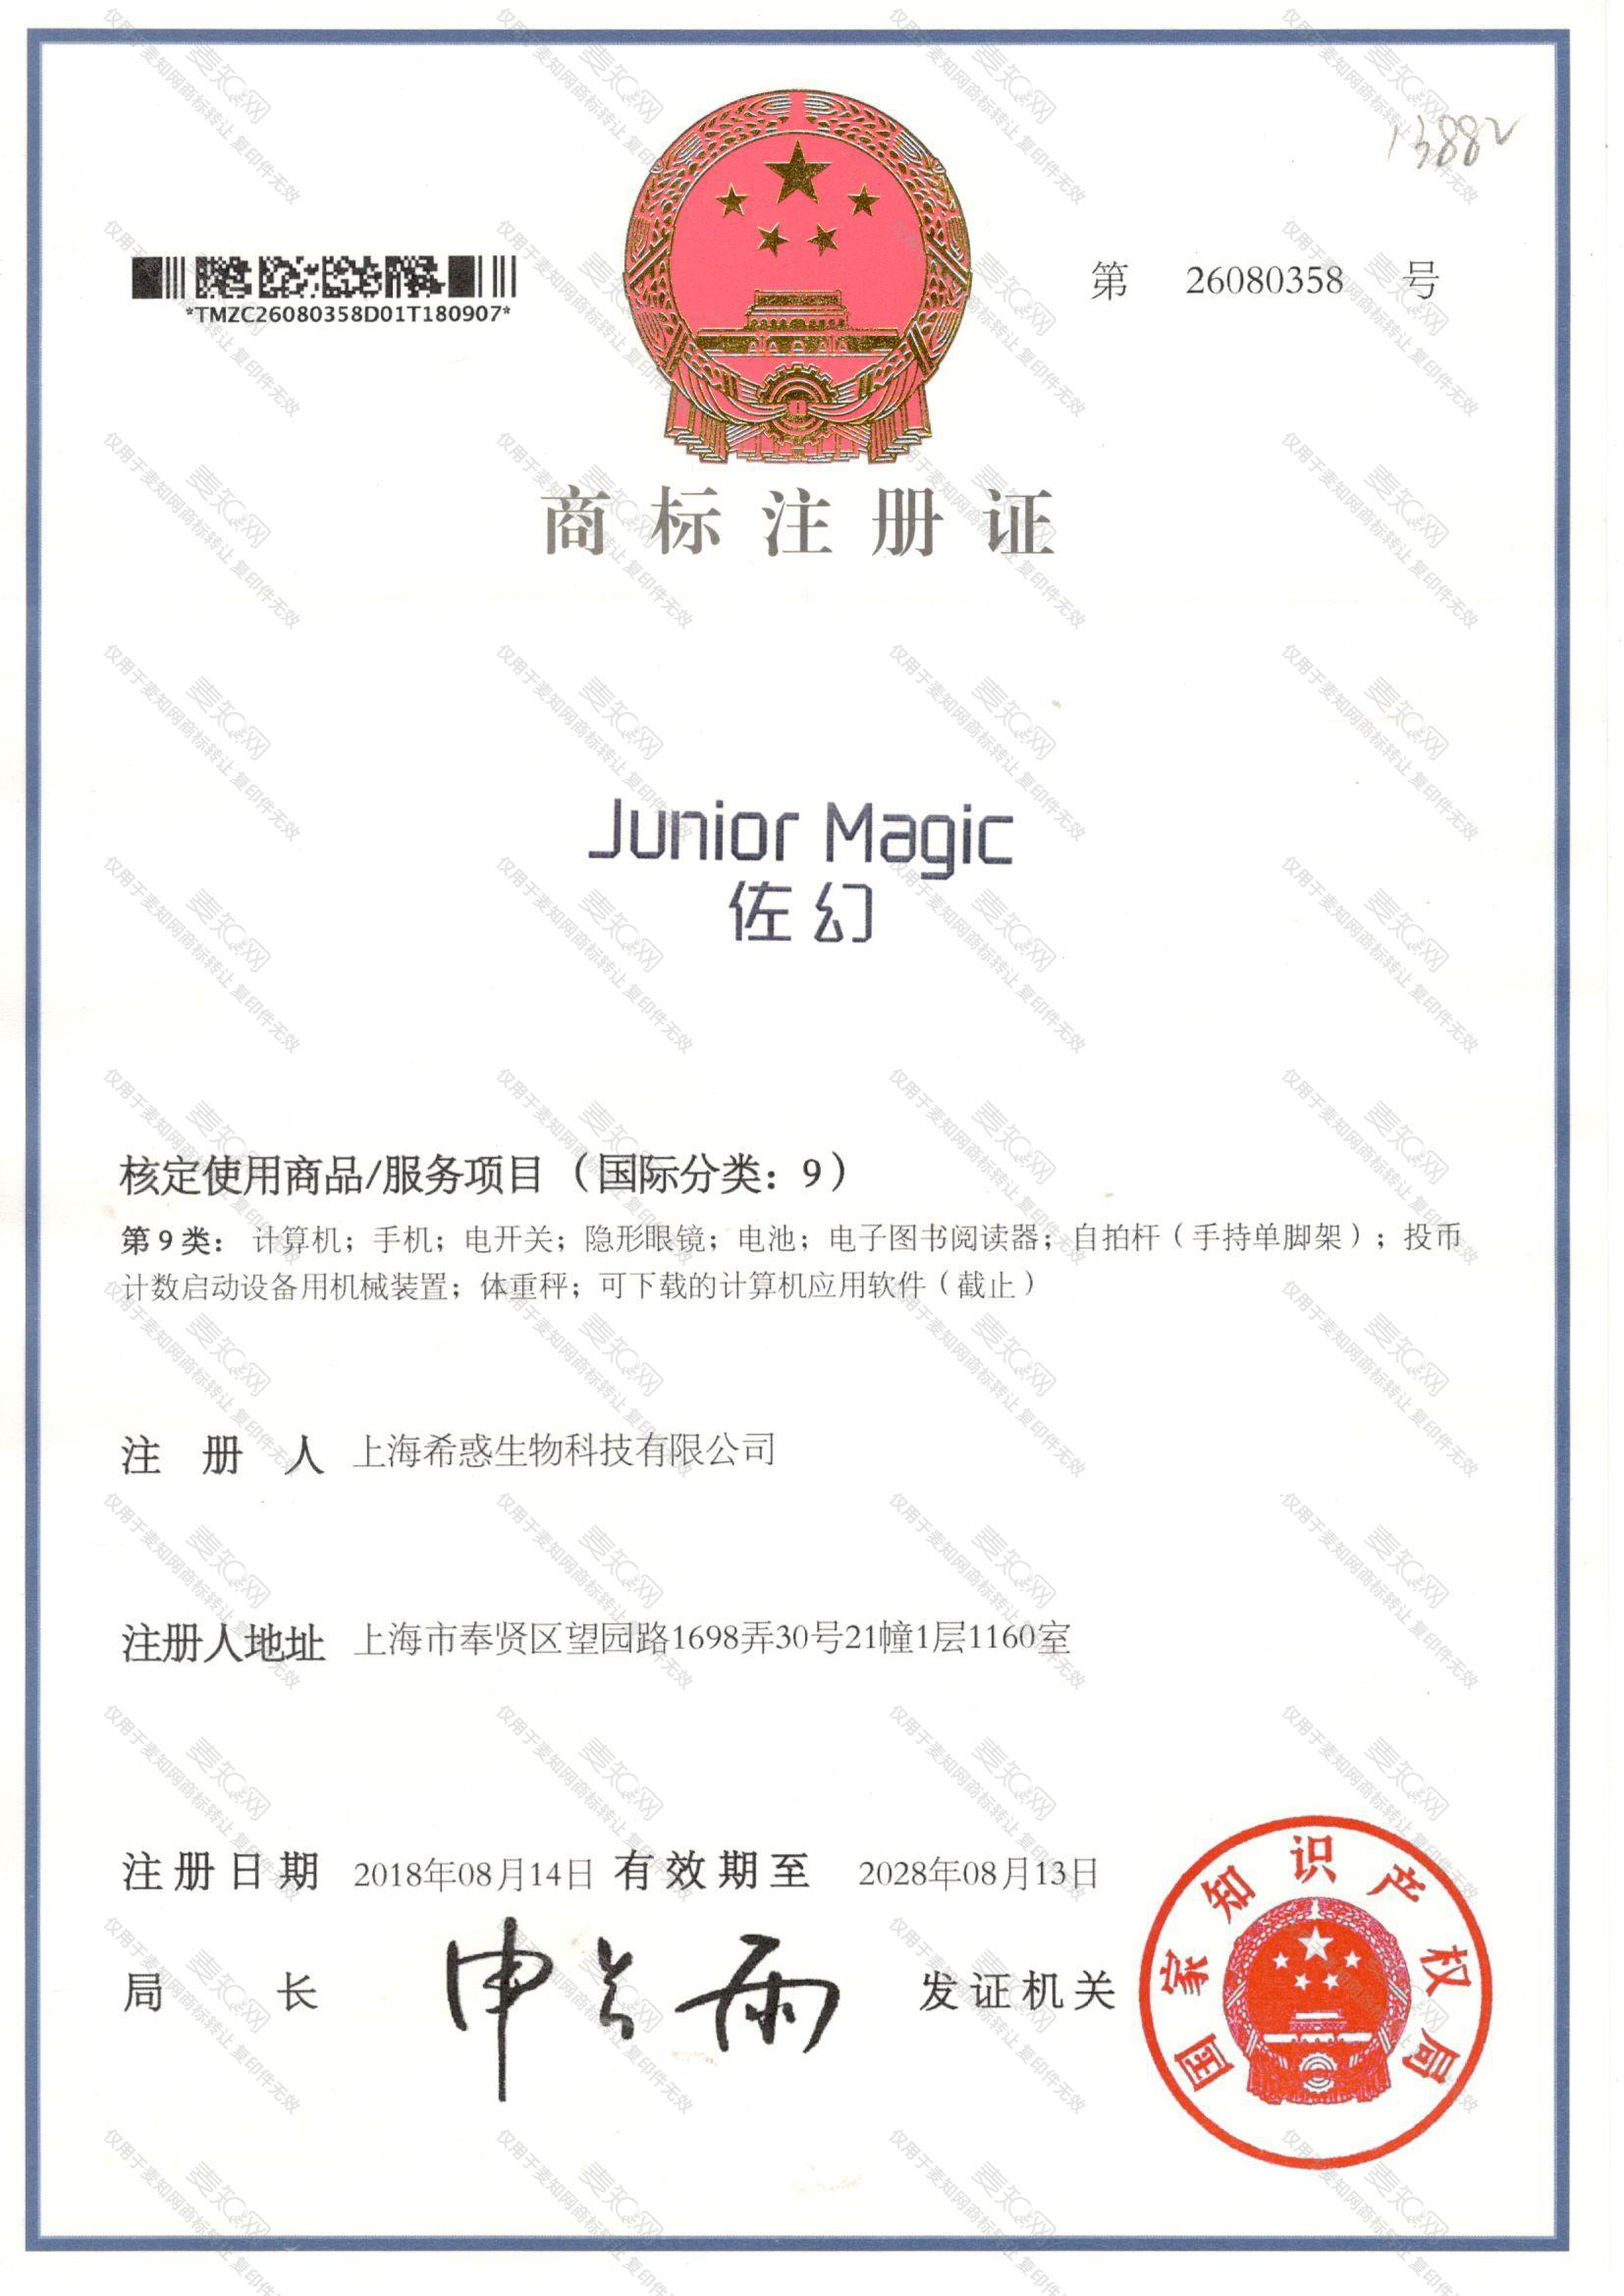 佐幻 JUNIOR MAGIC注册证